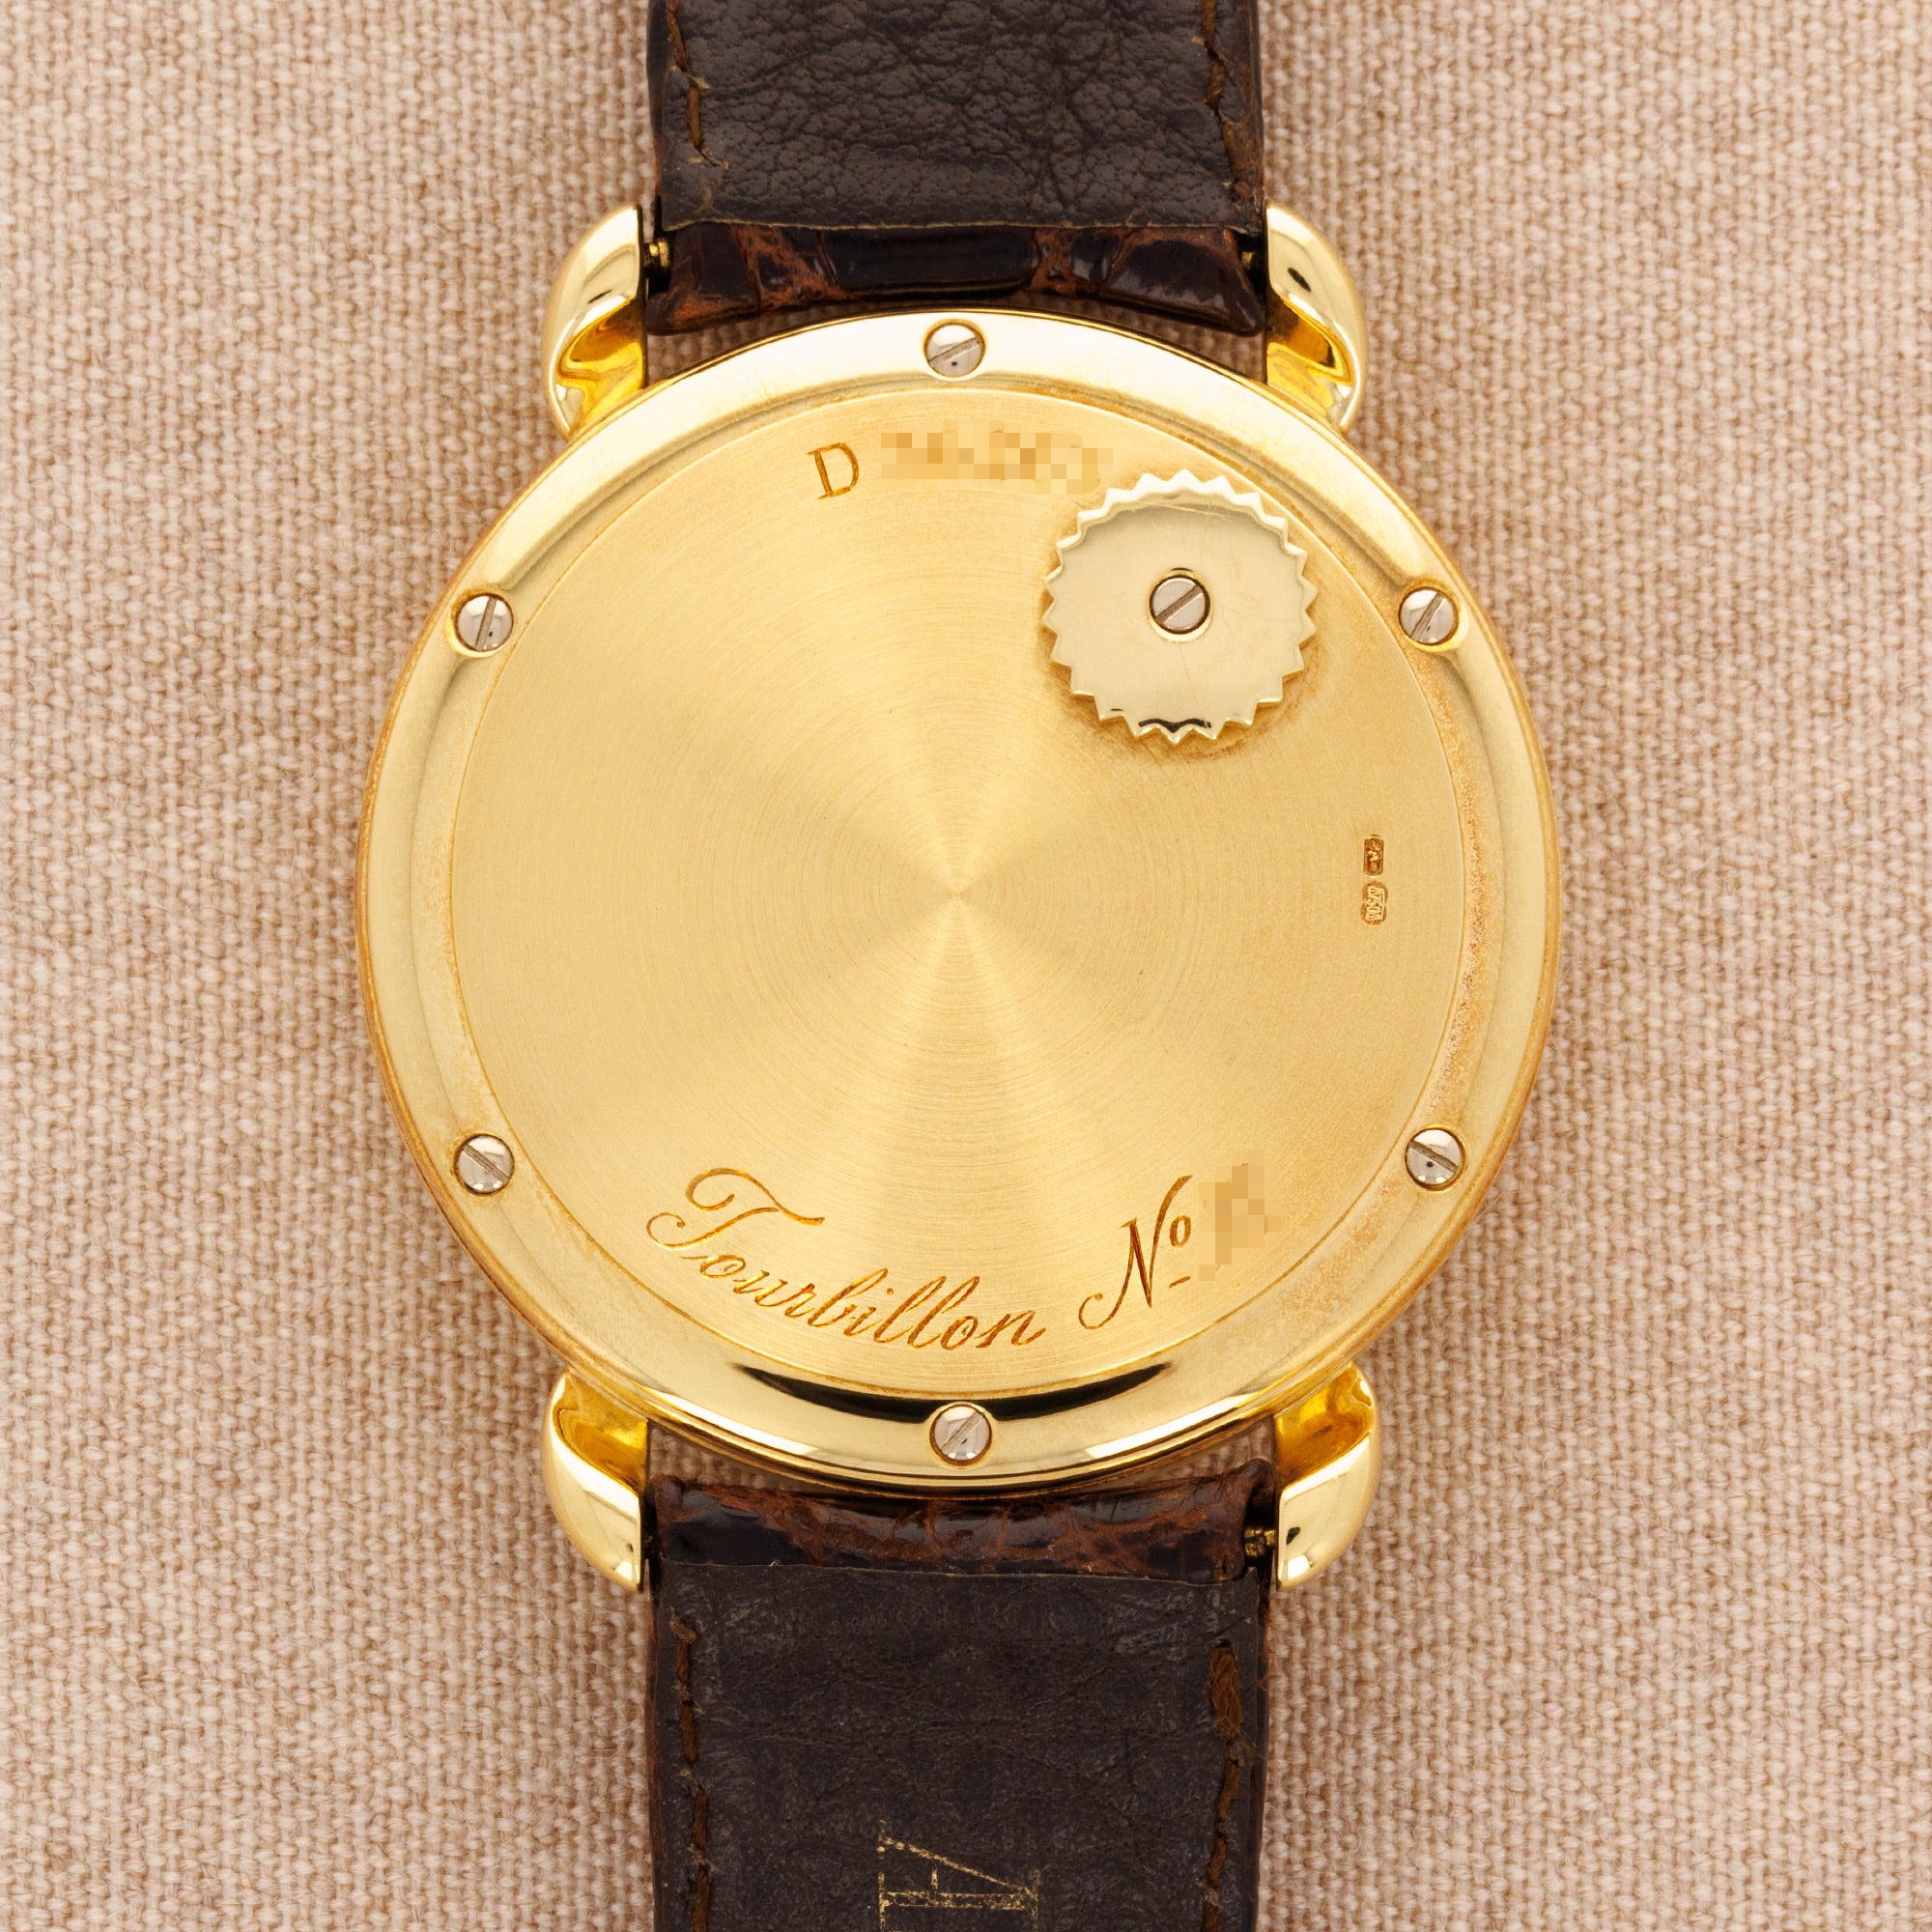 Audemars Piguet Jules Audemars Yellow Gold Tourbillon Watch Ref. 25718